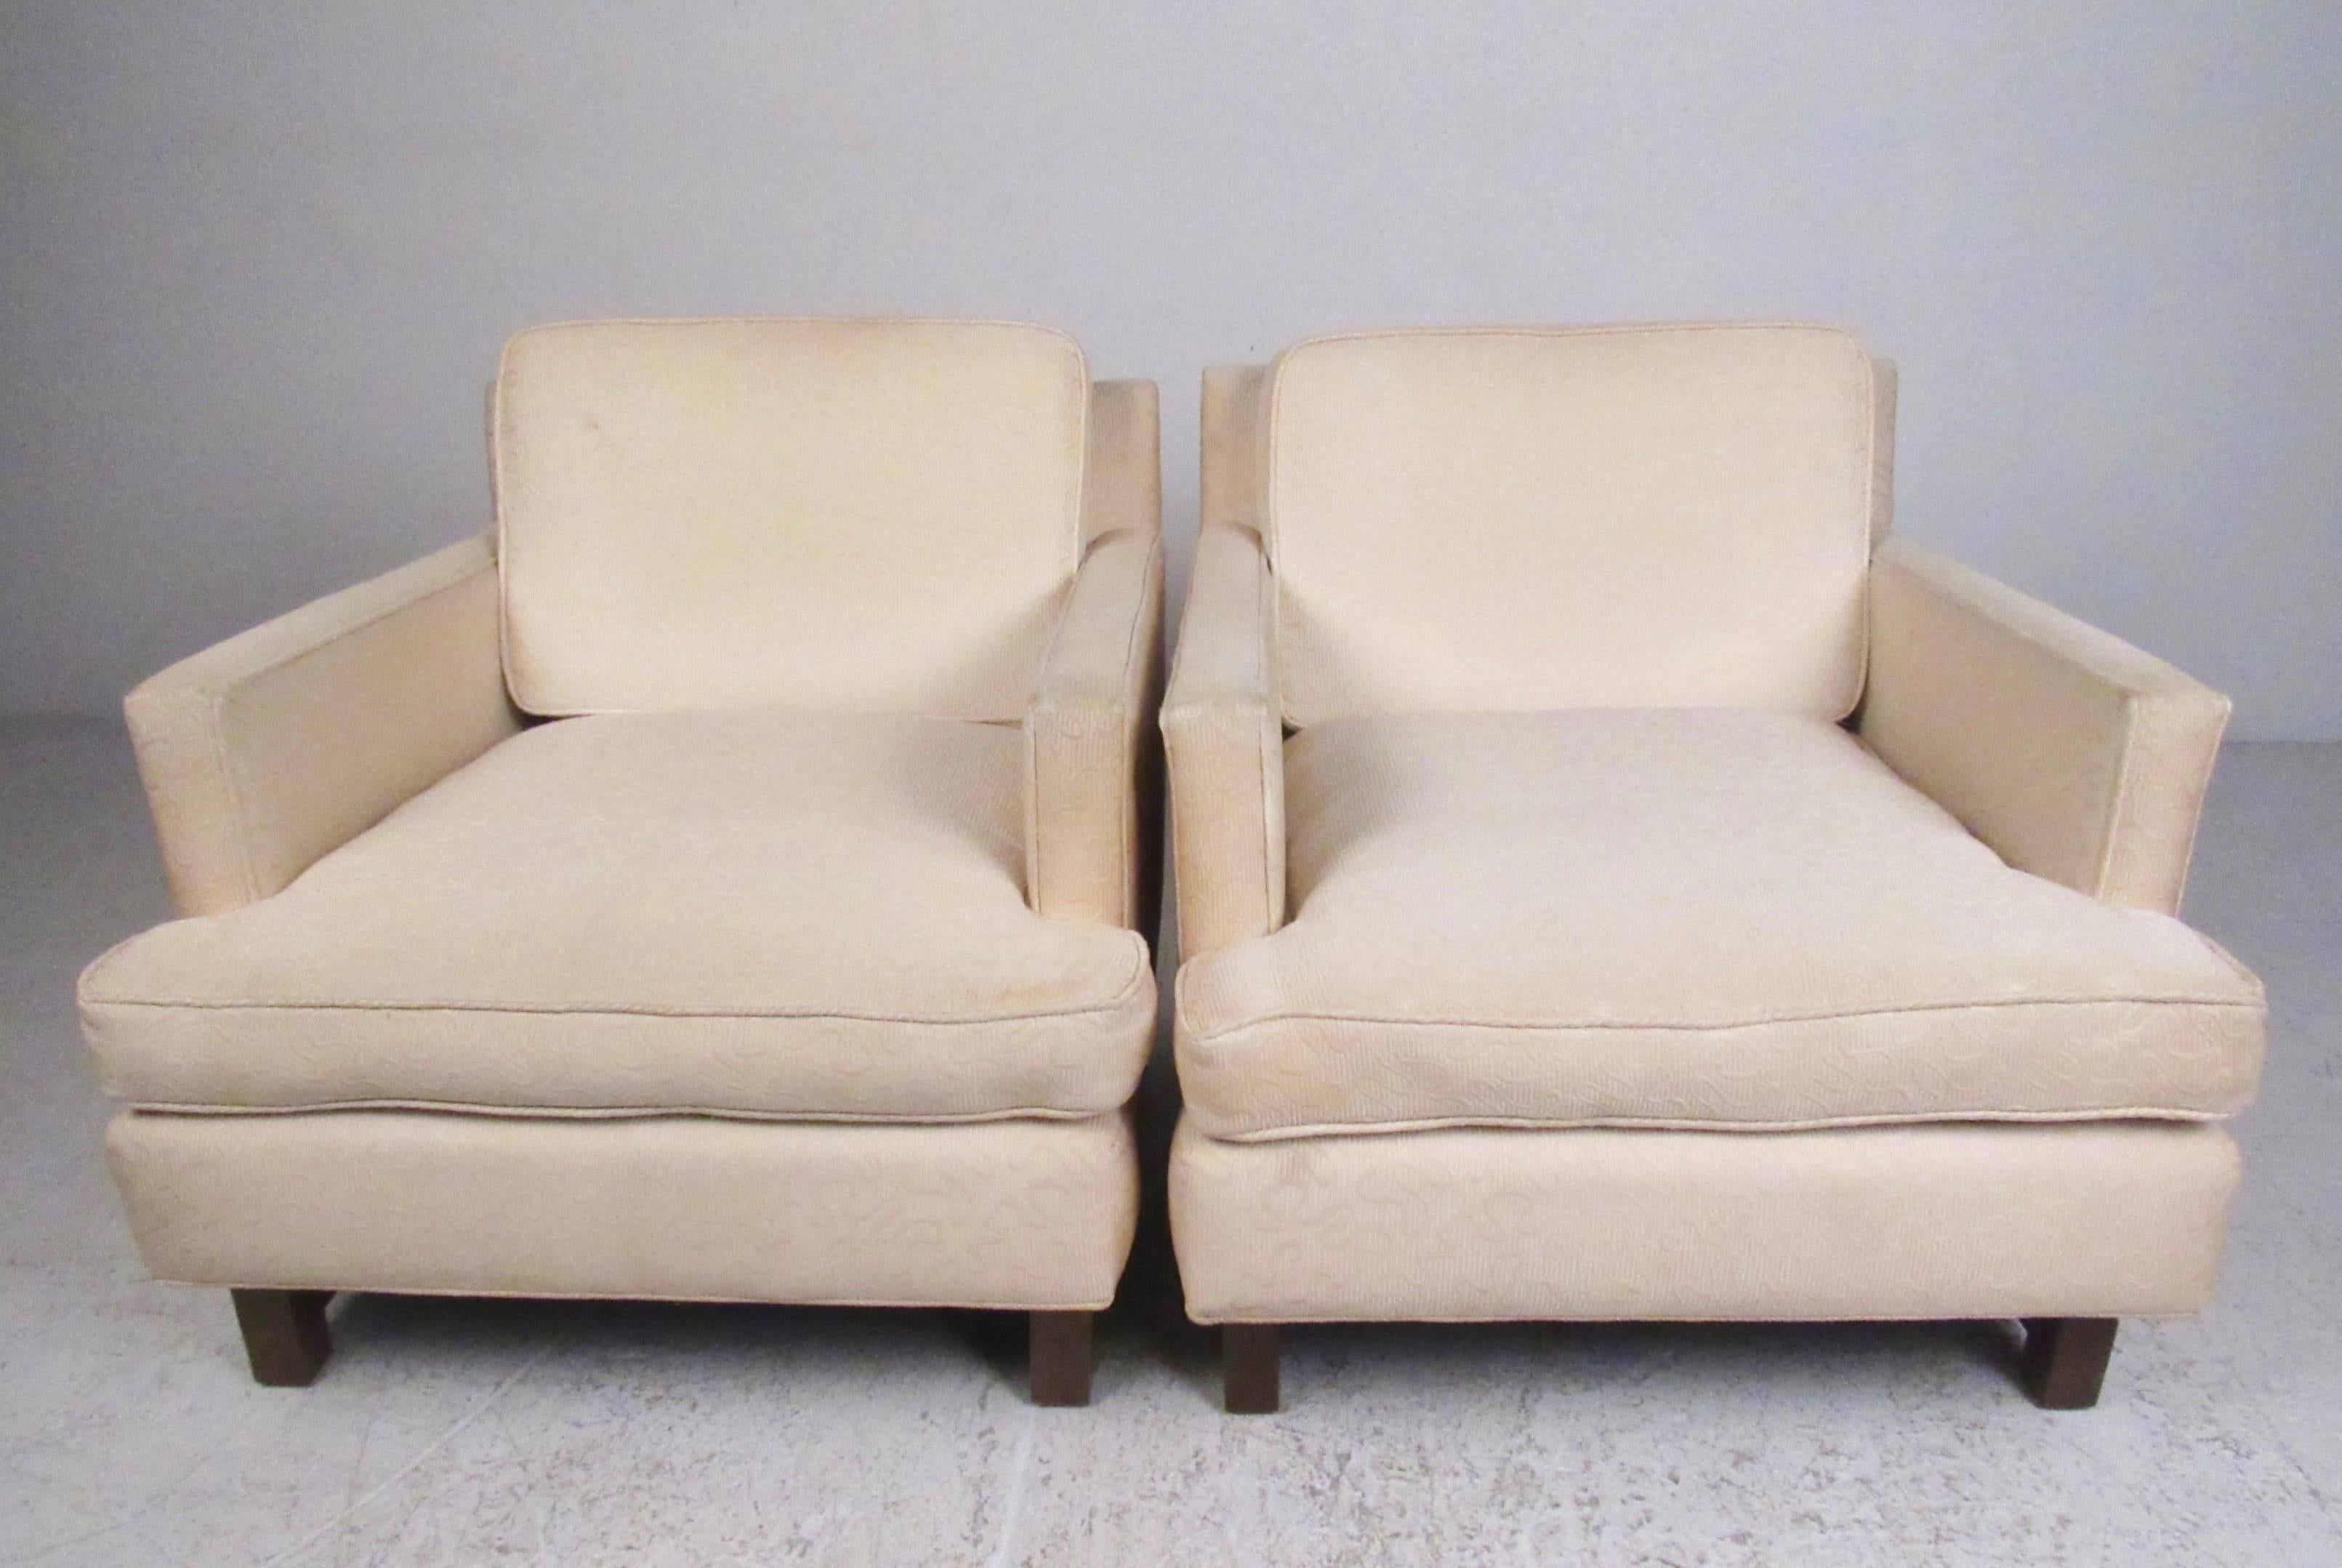 Cette paire élégante de fauteuils club vintage modernes présente un design similaire à celui d'Edward Wormley pour Dunbar. Les pieds en bois dur et les brancards ajoutent au style mid-century de cette paire de chaises longues rembourrées et